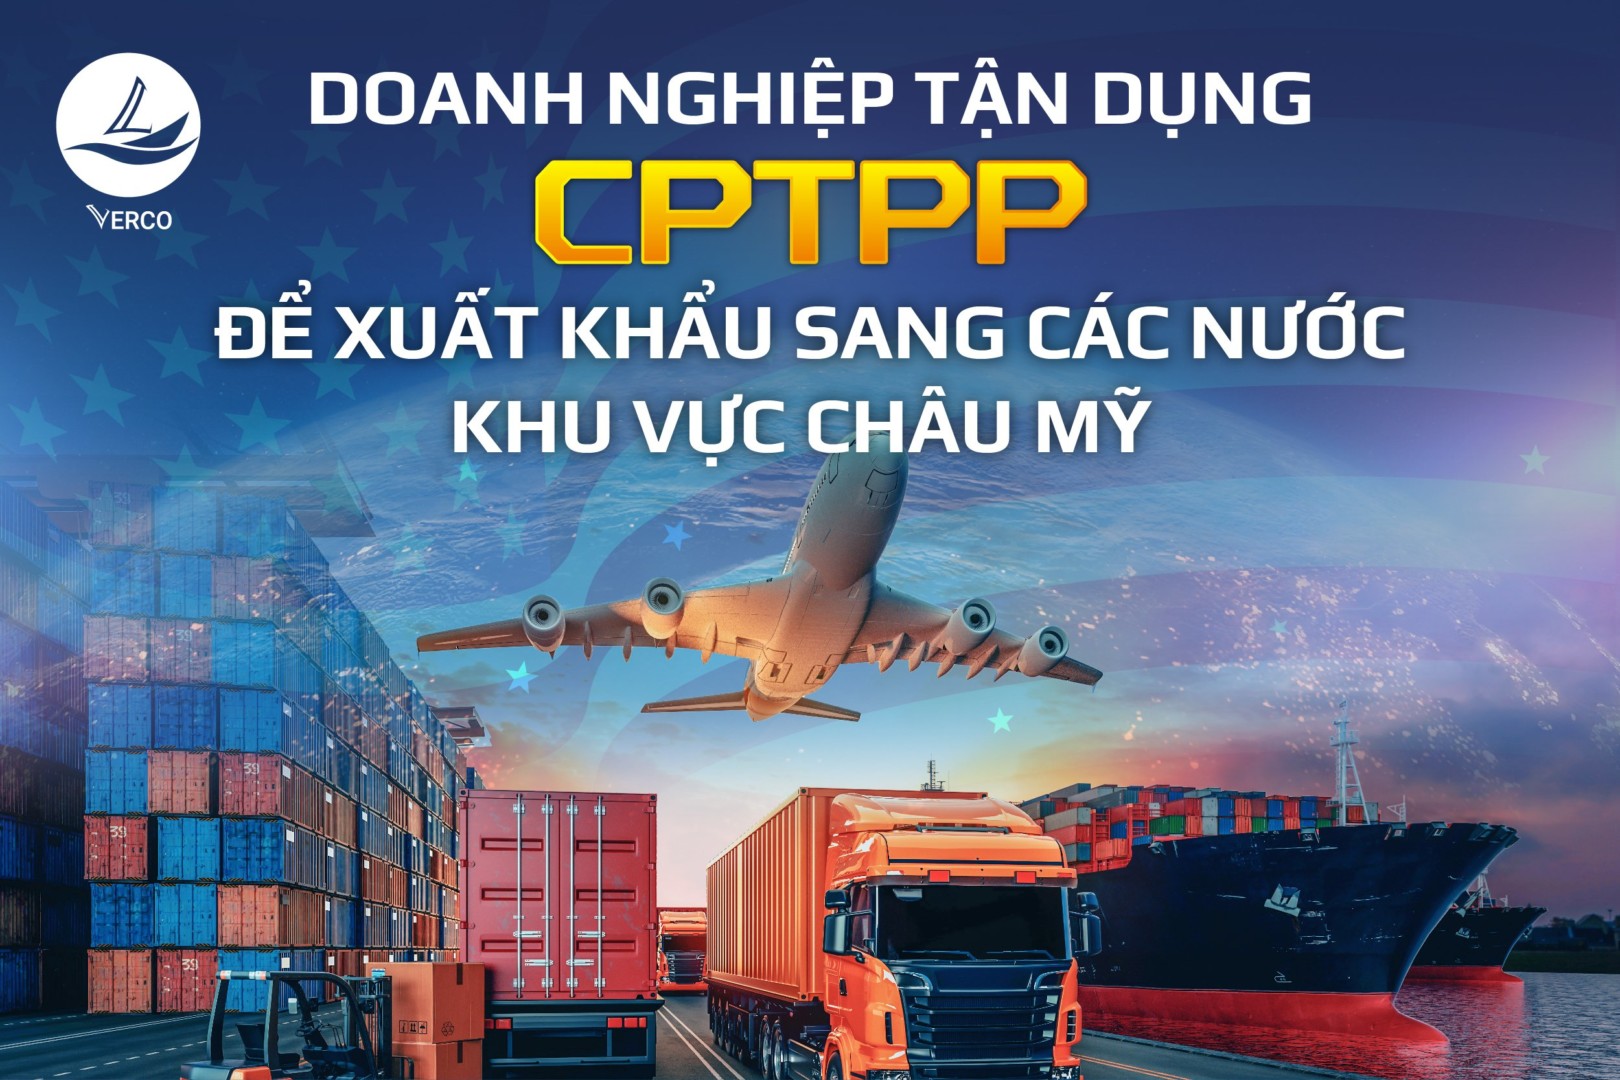 Doanh nghiệp tận dụng CPTPP để xuất khẩu sang các nước khu vực châu Mỹ